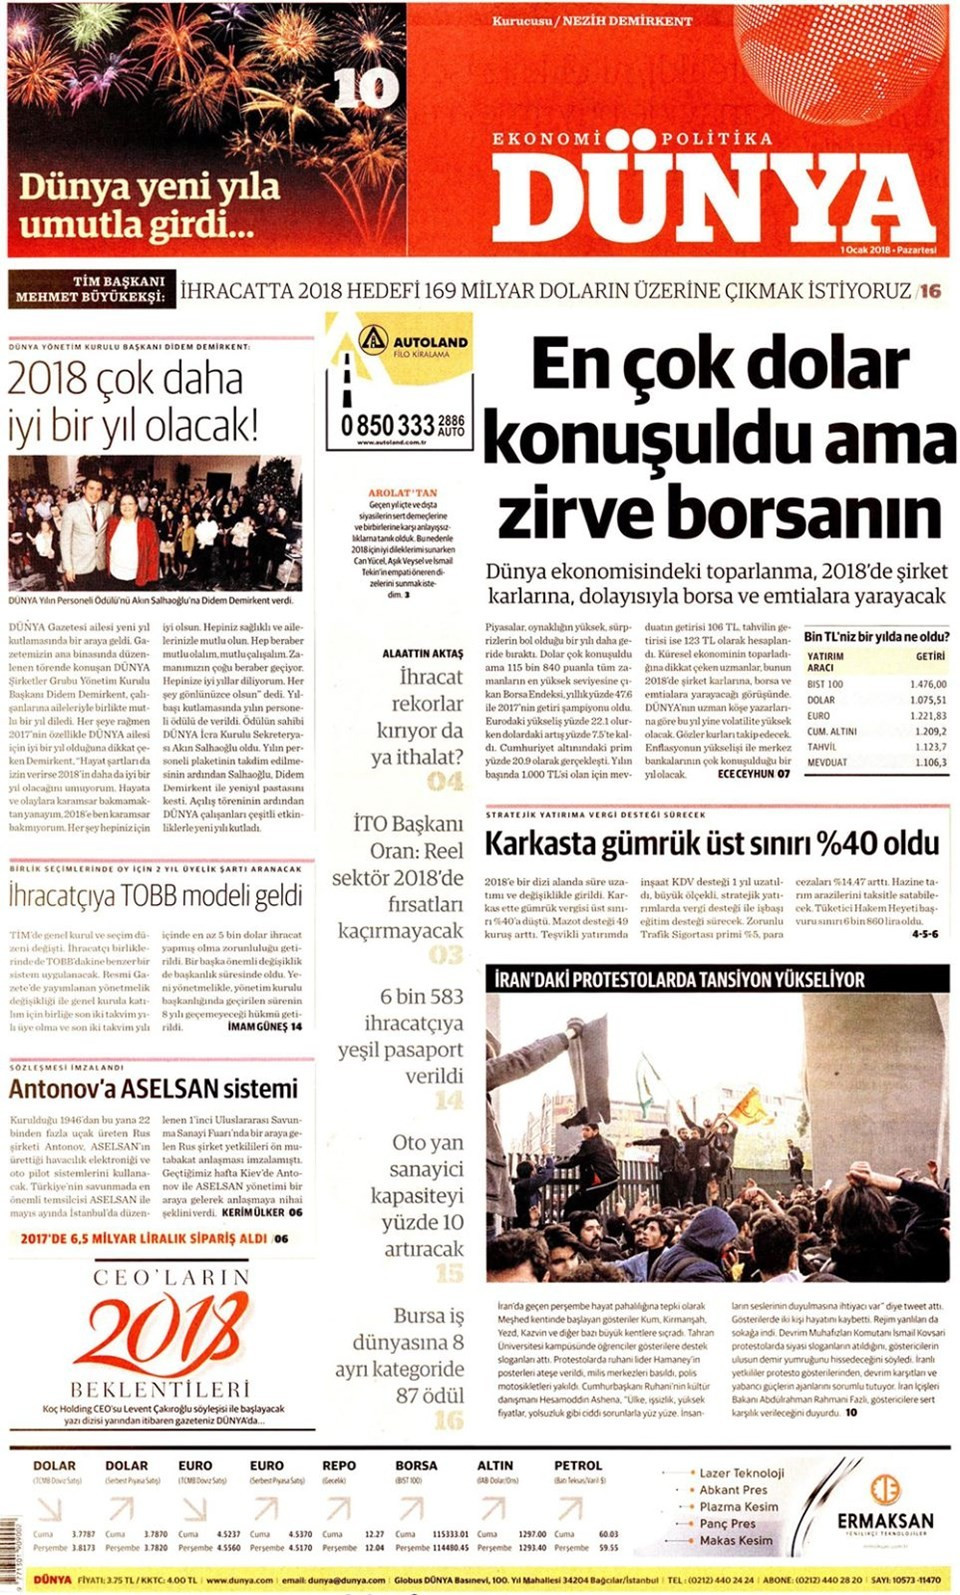 Yeni yılın ilk gazete manşetleri (01.01.2018) - Sayfa 1